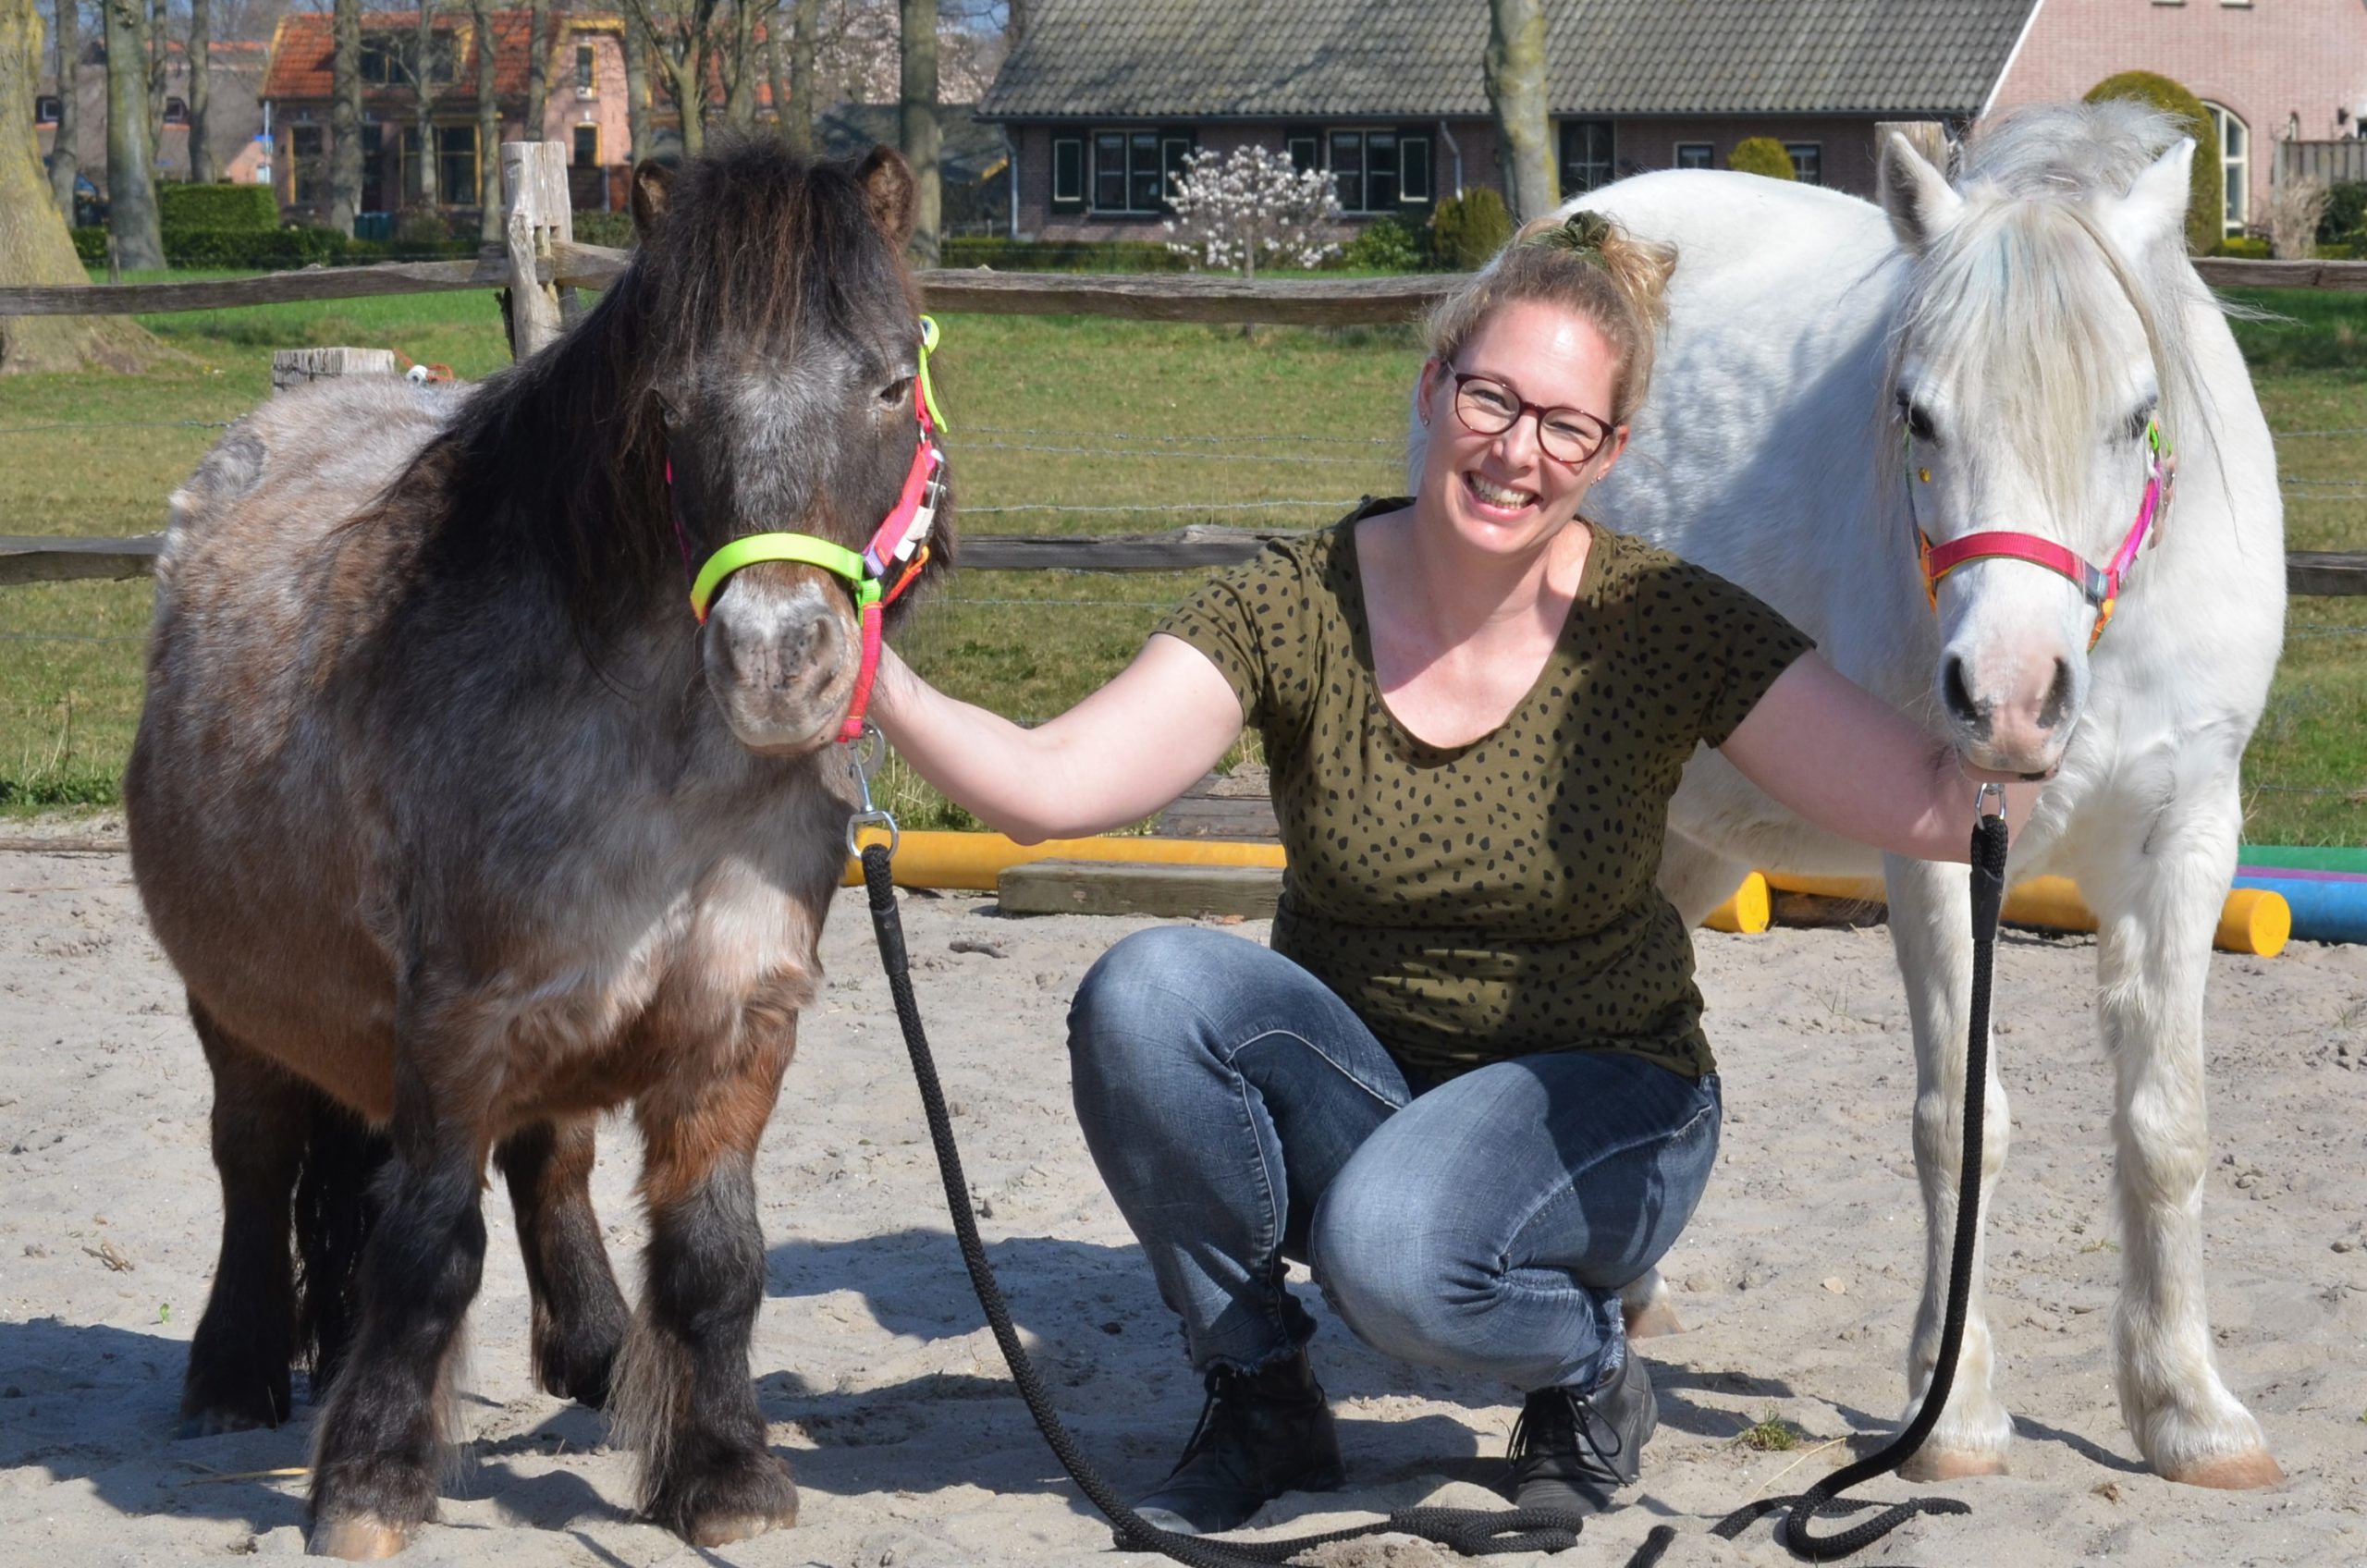 referenties coachees over ervaringen paardencoachsessie bij Elleke met de coachponys sammy flo en ella